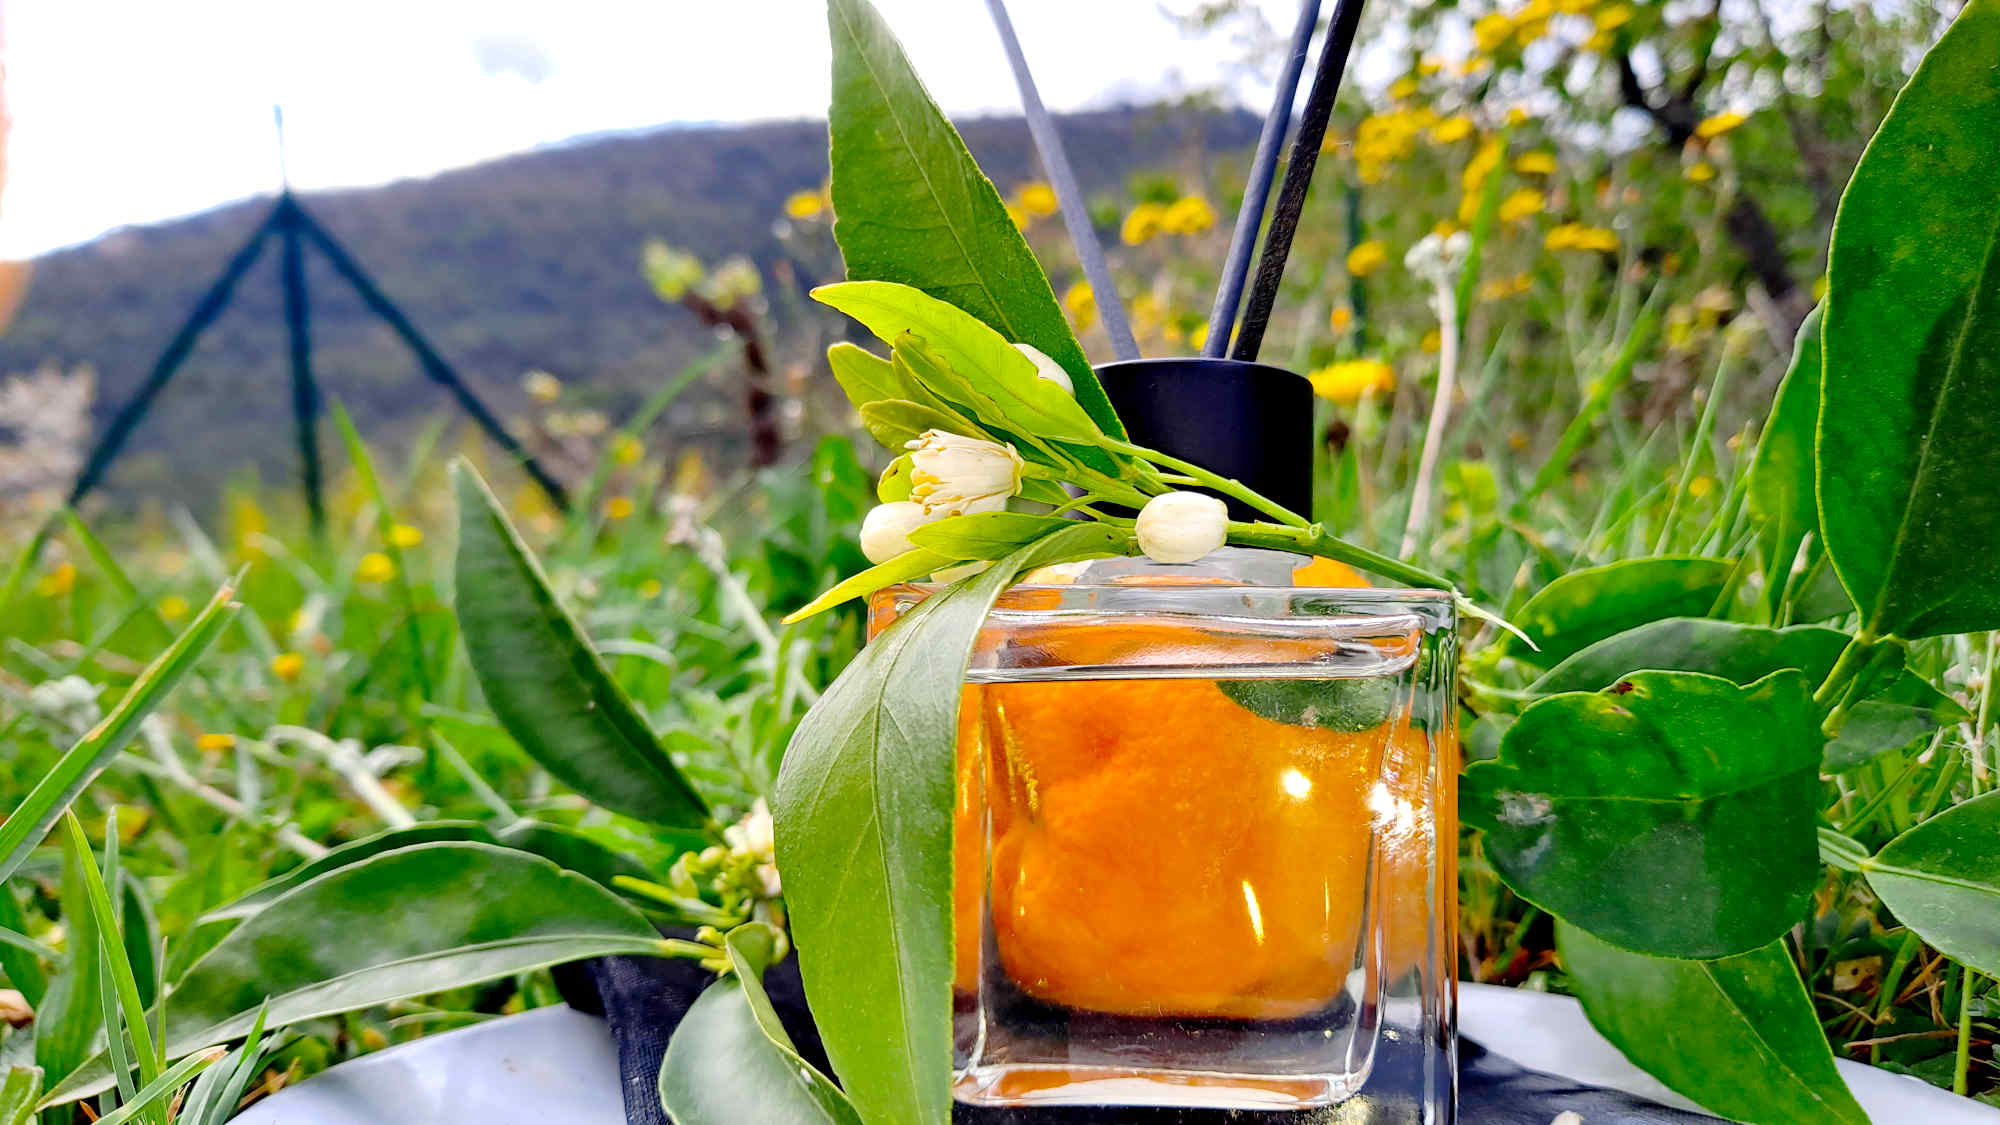 Diffuseur de parfum à bâtonnets fleur d'oranger - flacon capilla fleur oranger producteur local cote d azur grasse